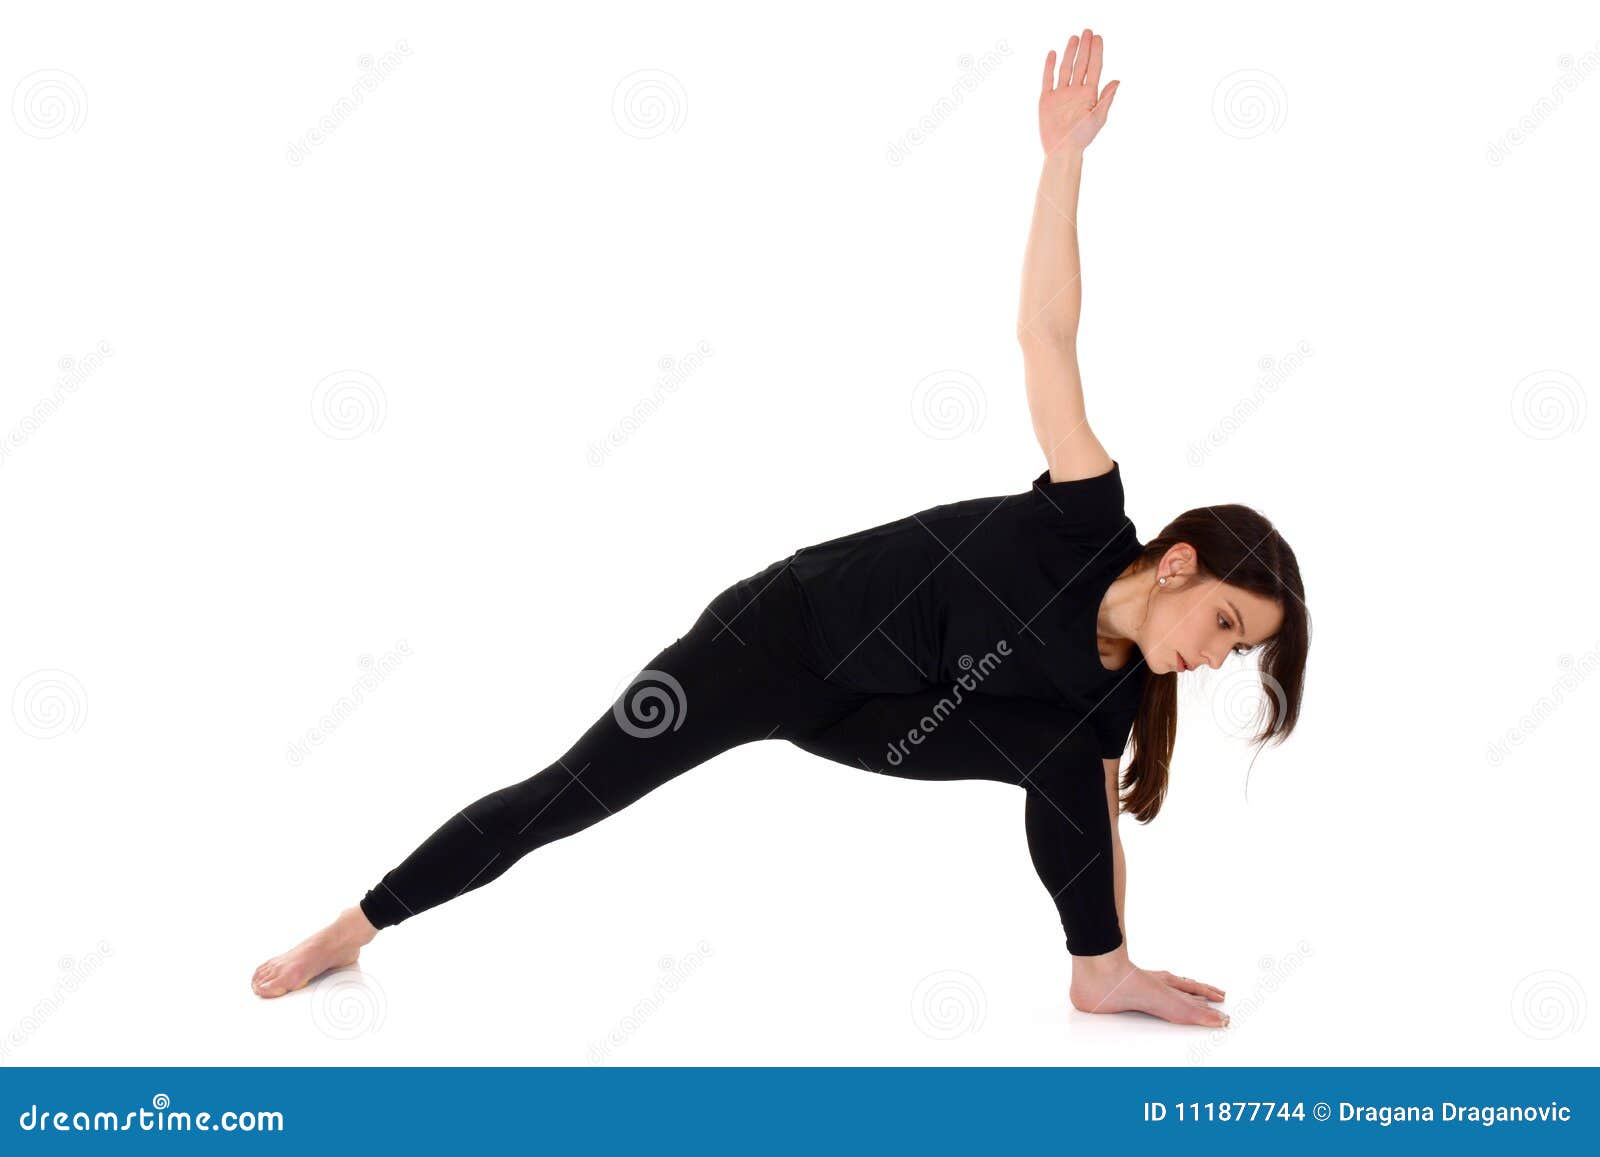 Utthita Parsvakonasana (Extended Side Angle) yoga pose - PixaHive